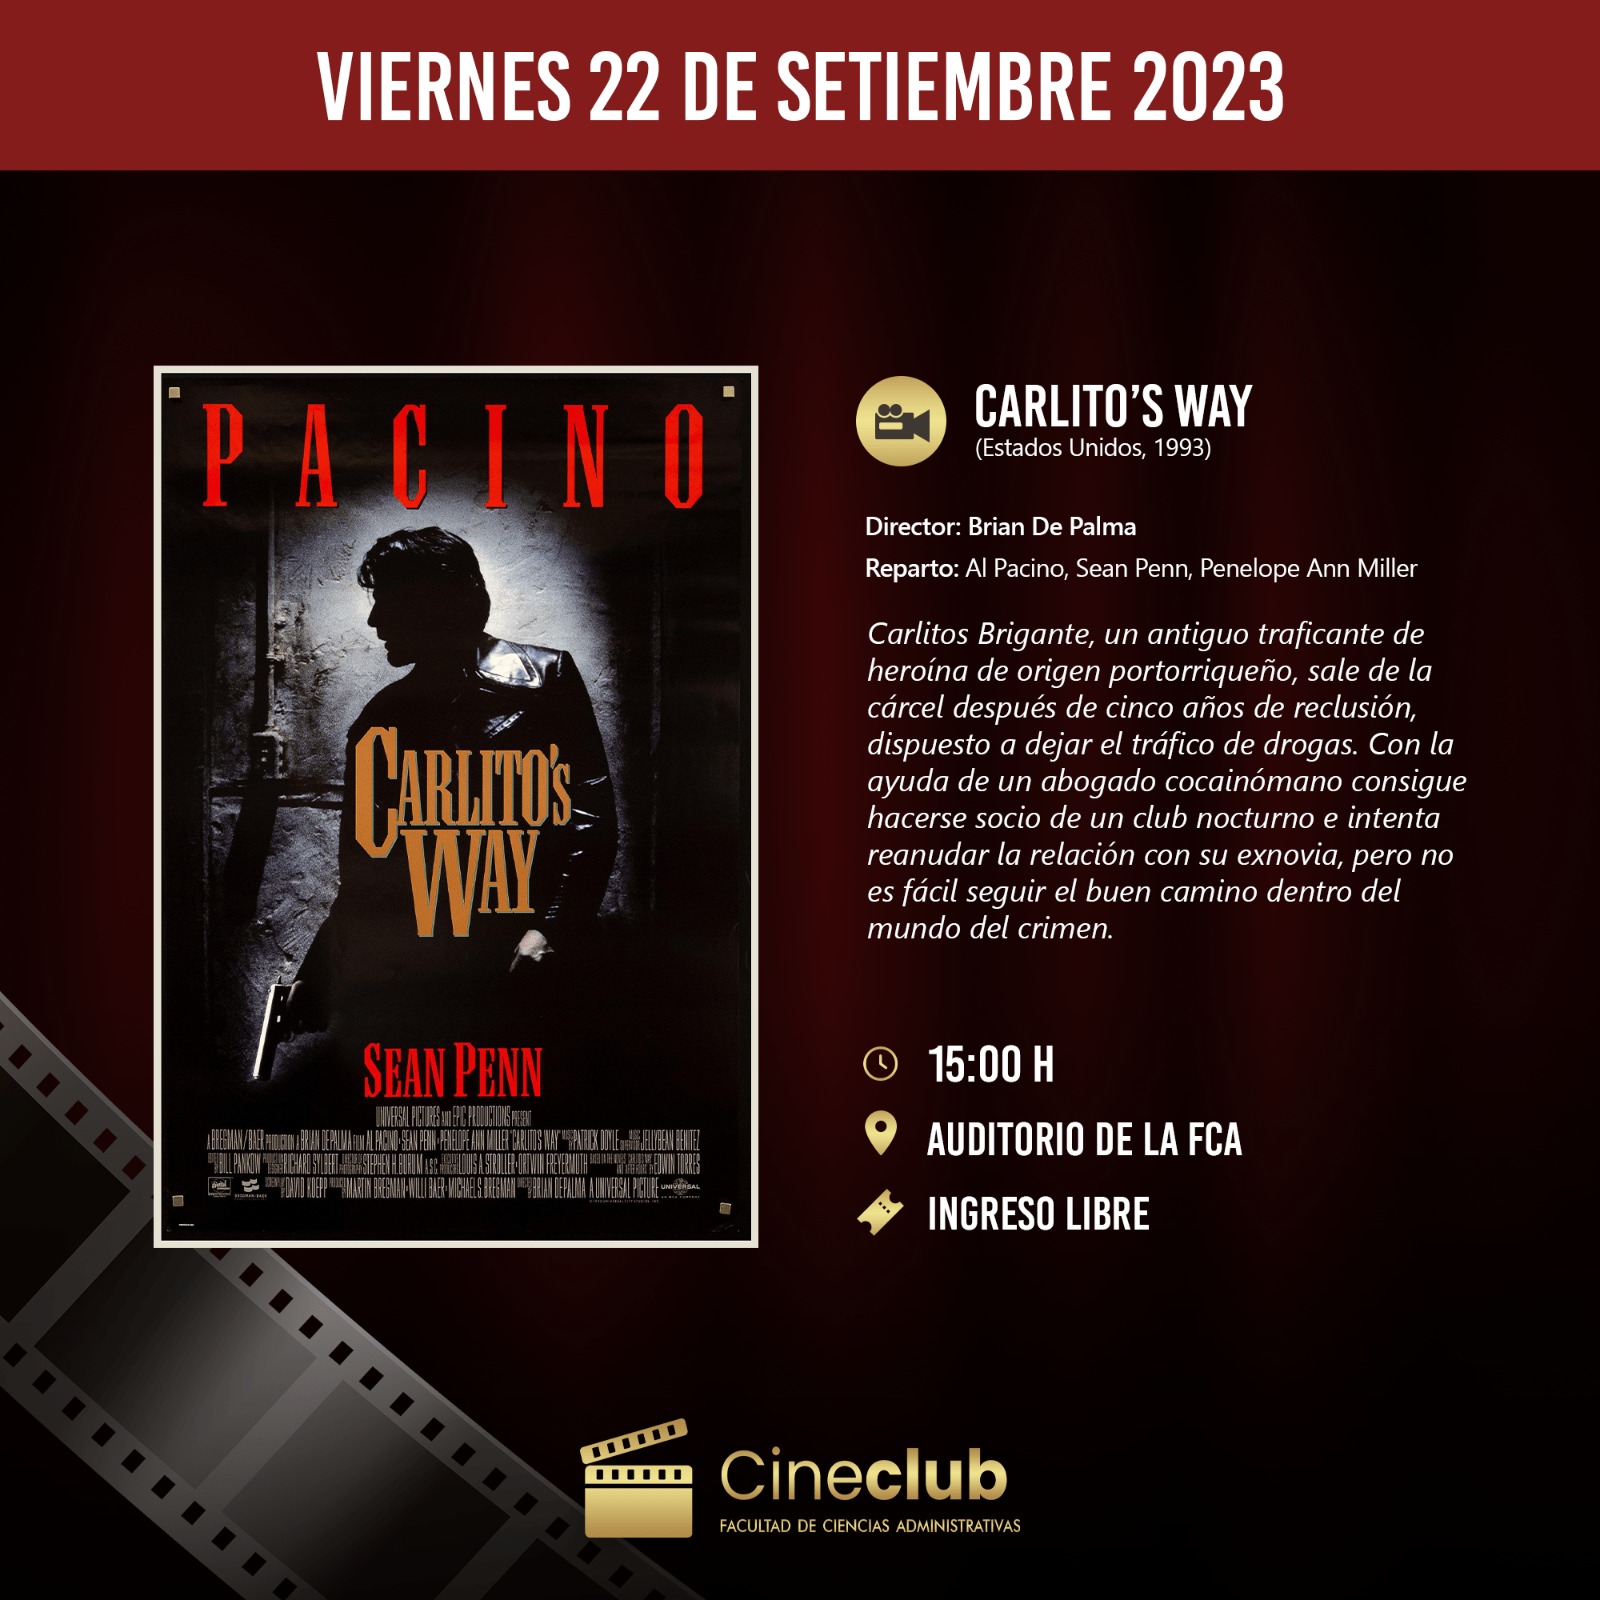 Este viernes seguimos con las películas en el Cineclub de la FCA con Carlitos Way